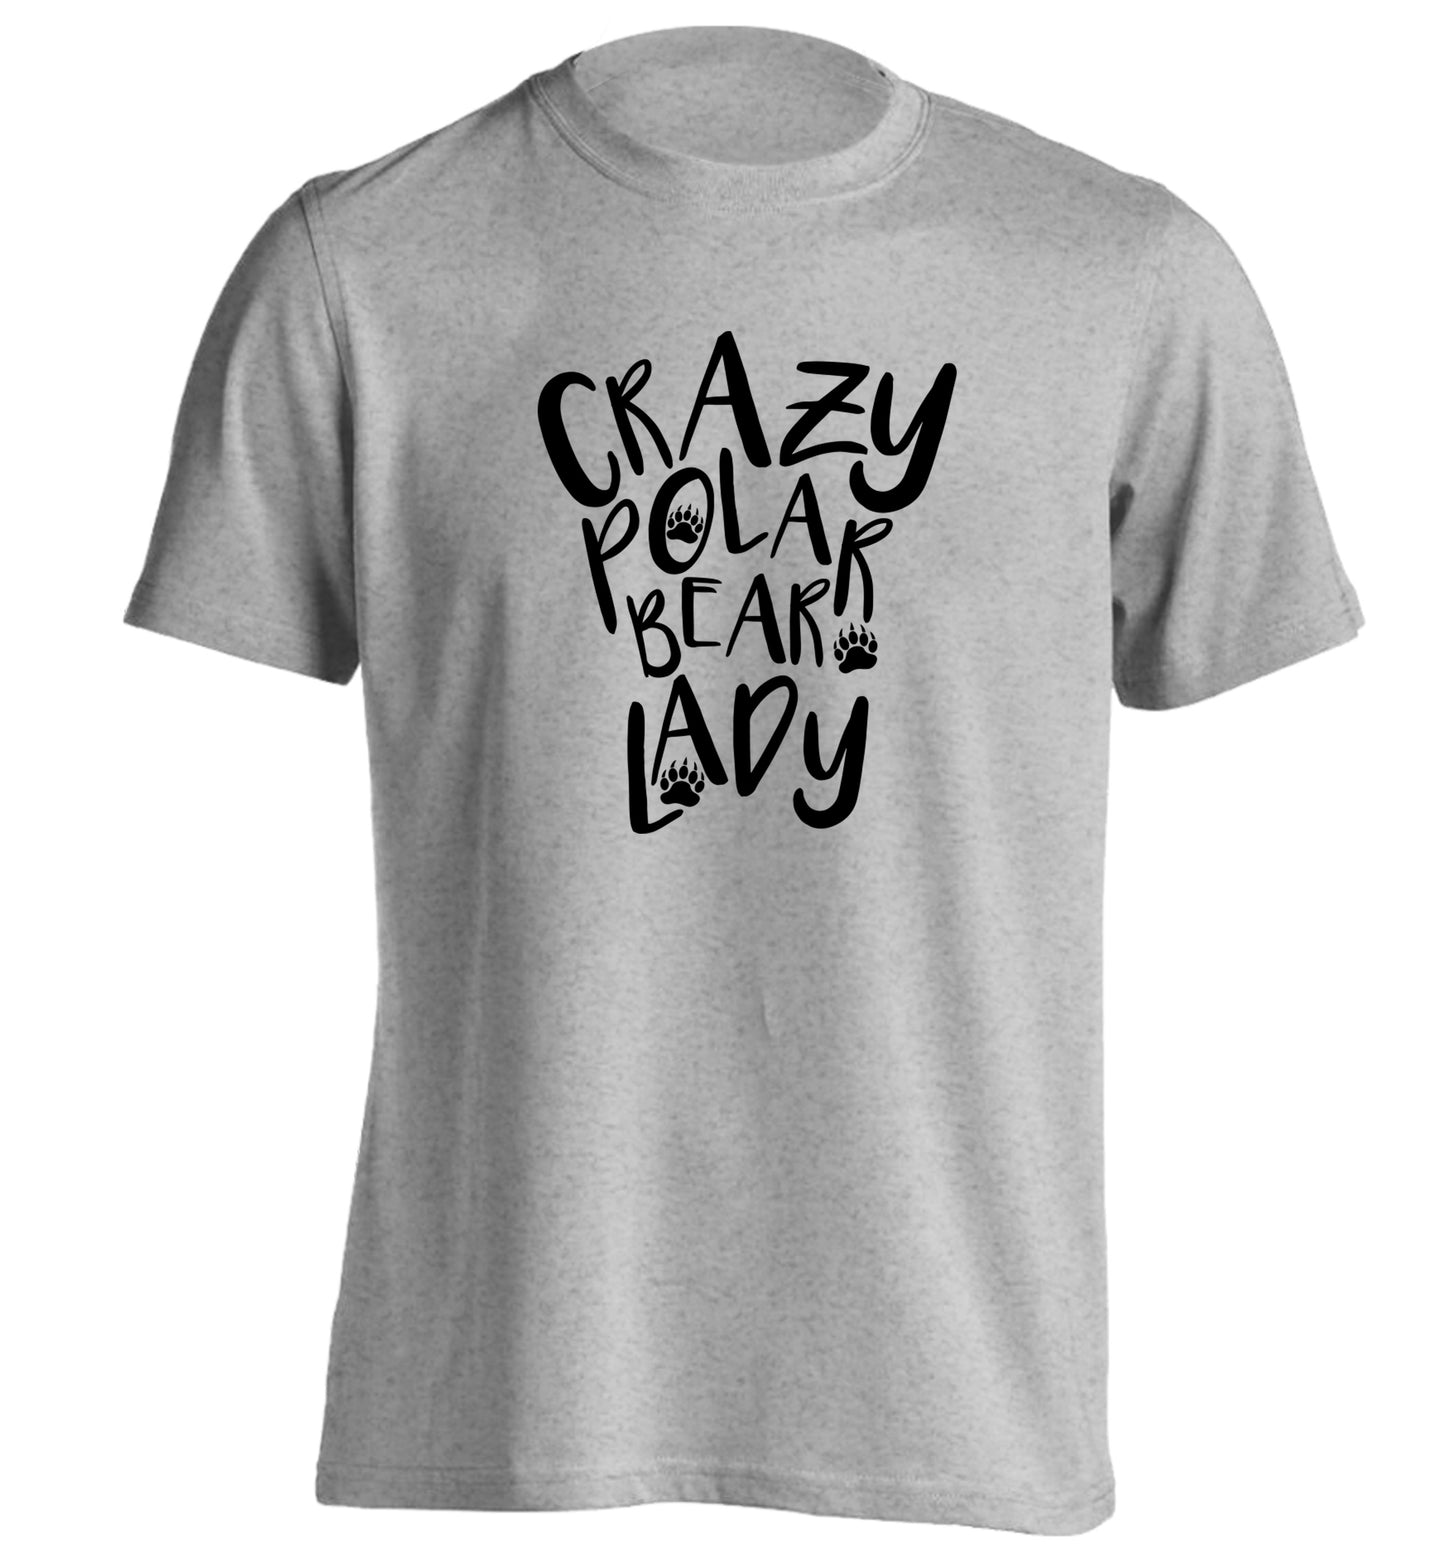 Crazy polar bear lady adults unisex grey Tshirt 2XL